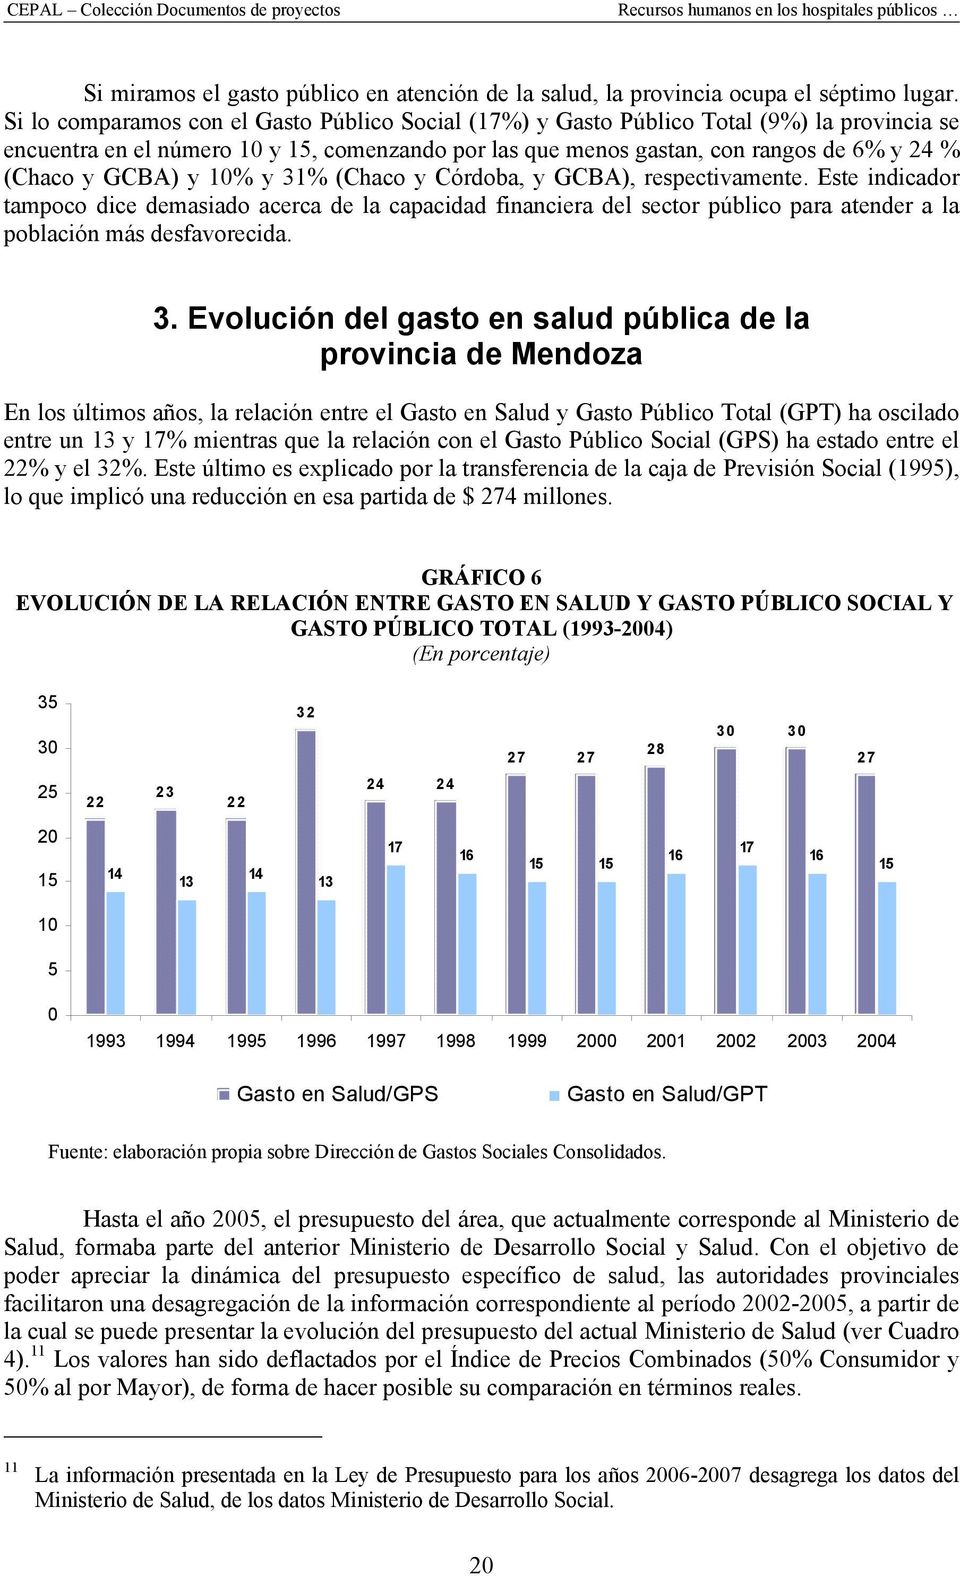 GCBA) y 10% y 31% (Chaco y Córdoba, y GCBA), respectivamente. Este indicador tampoco dice demasiado acerca de la capacidad financiera del sector público para atender a la población más desfavorecida.